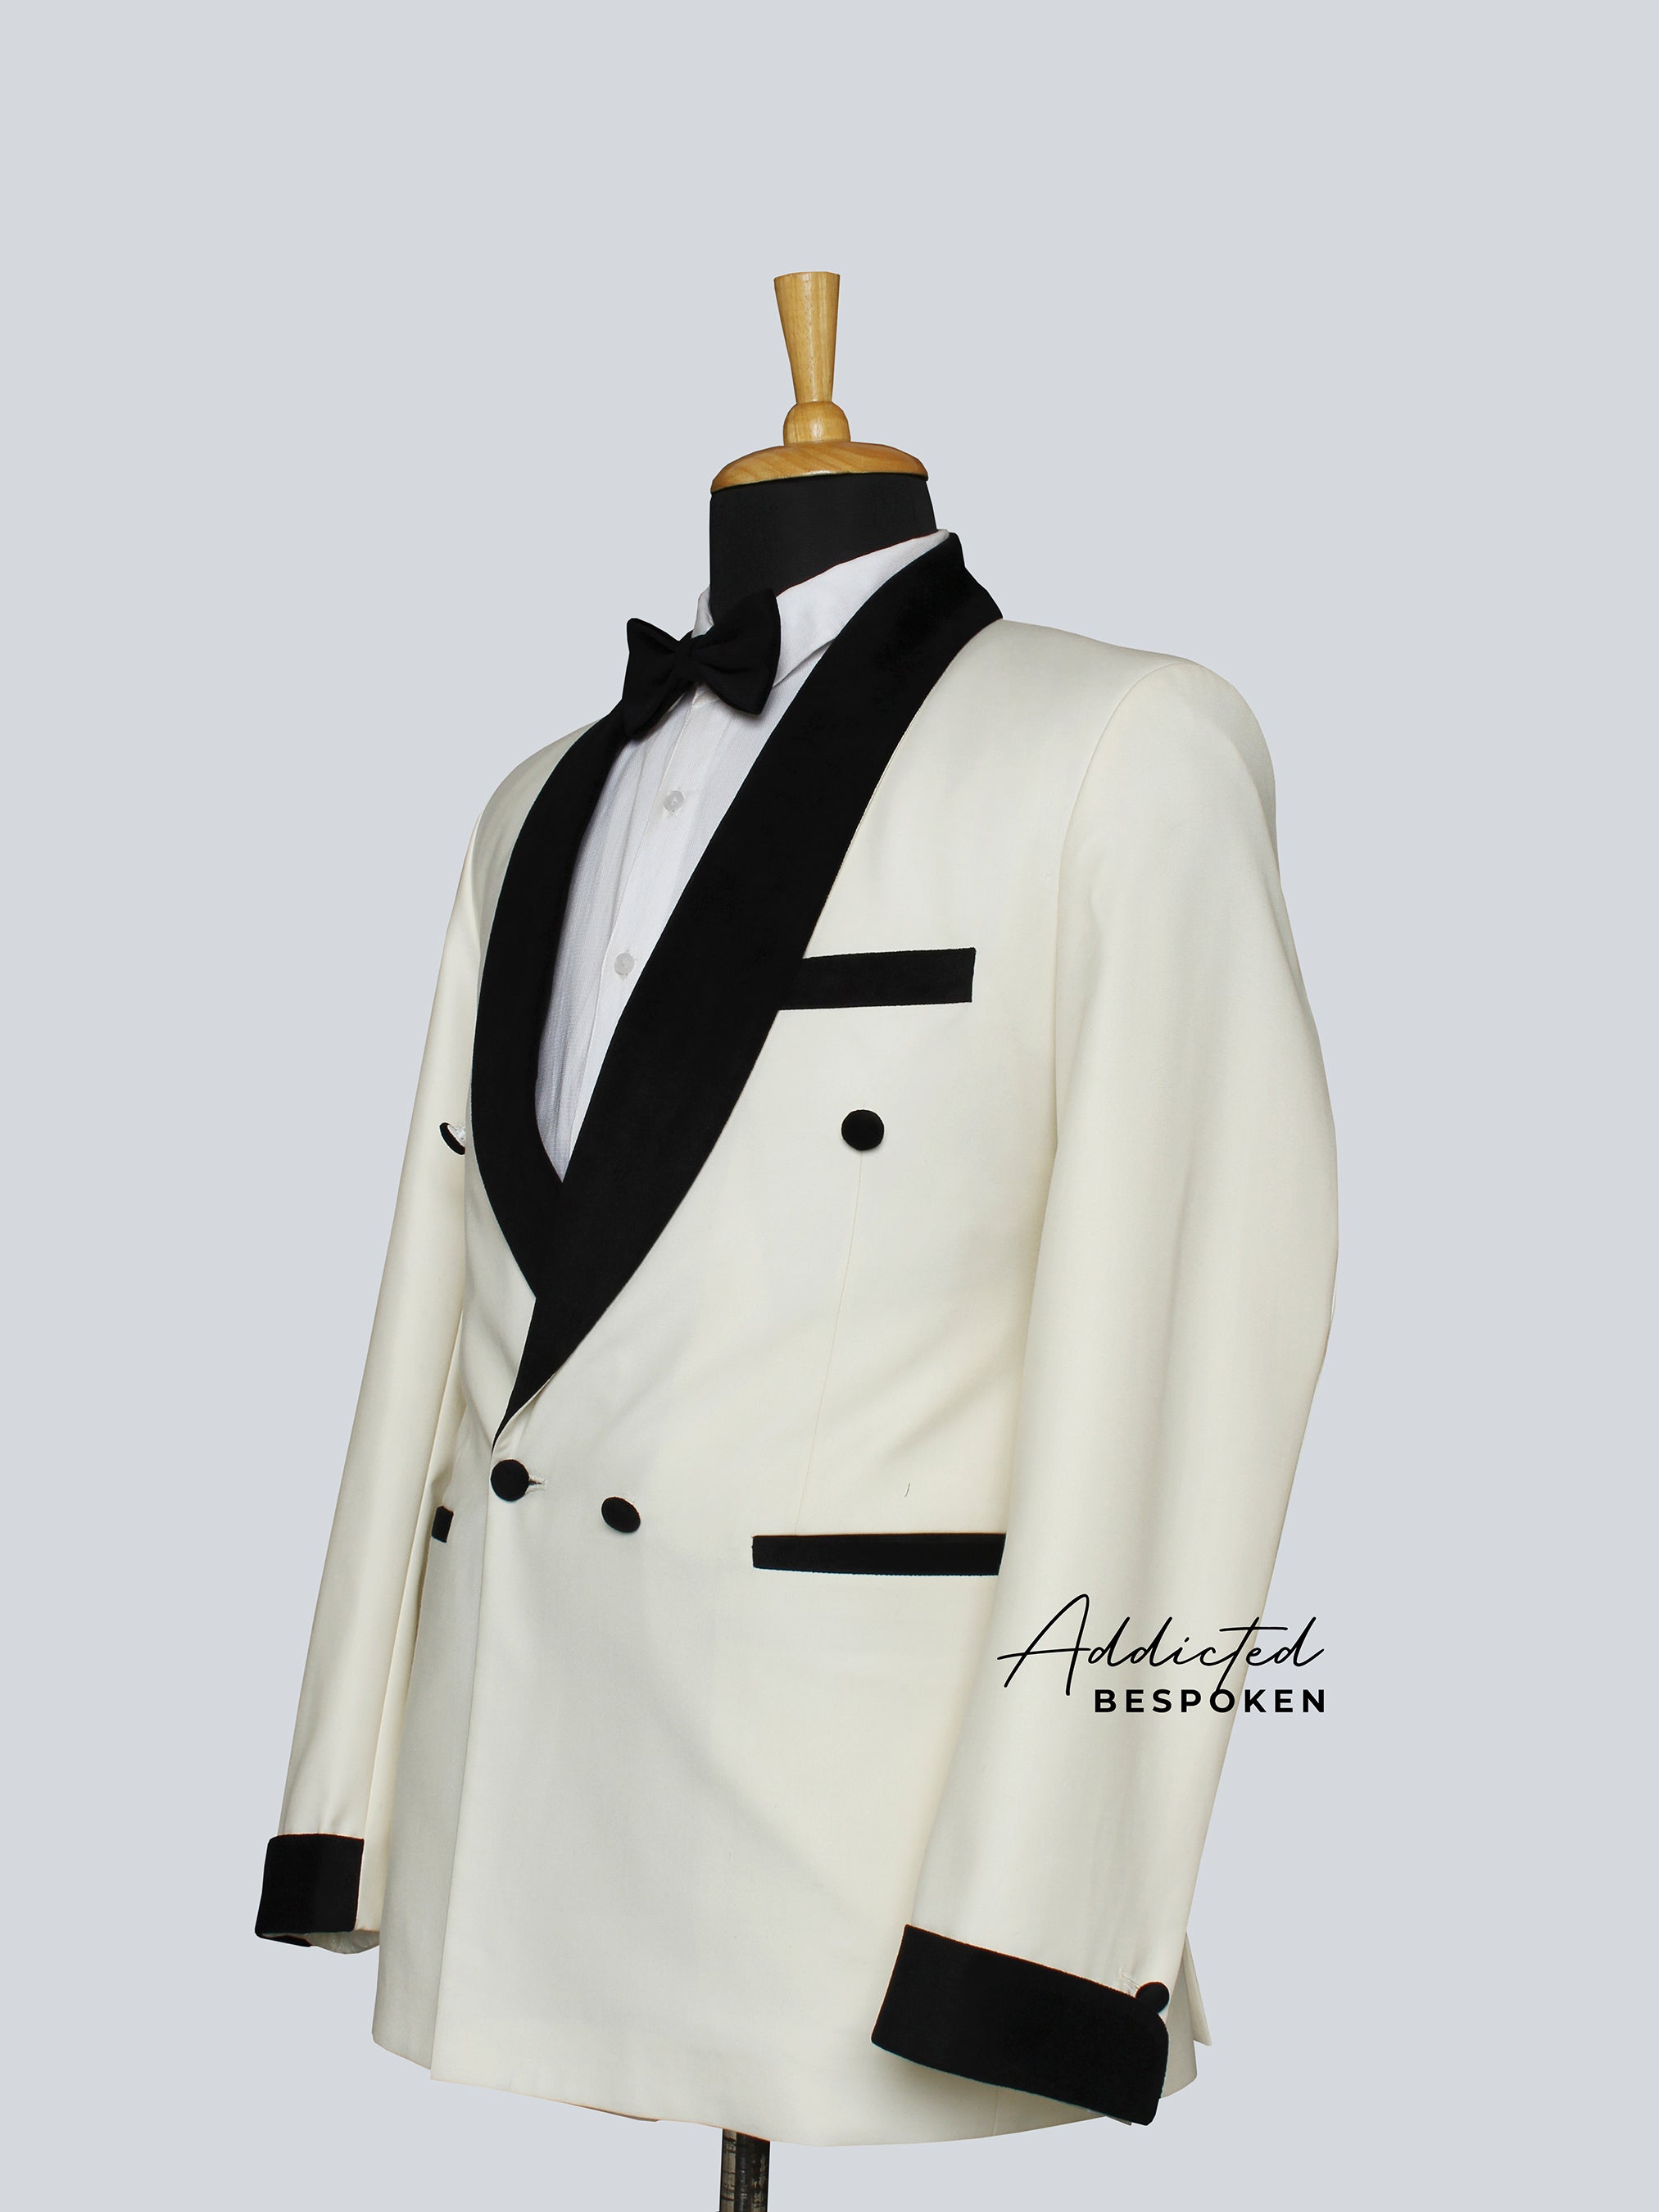 The Gentleman Tuxedo Suit